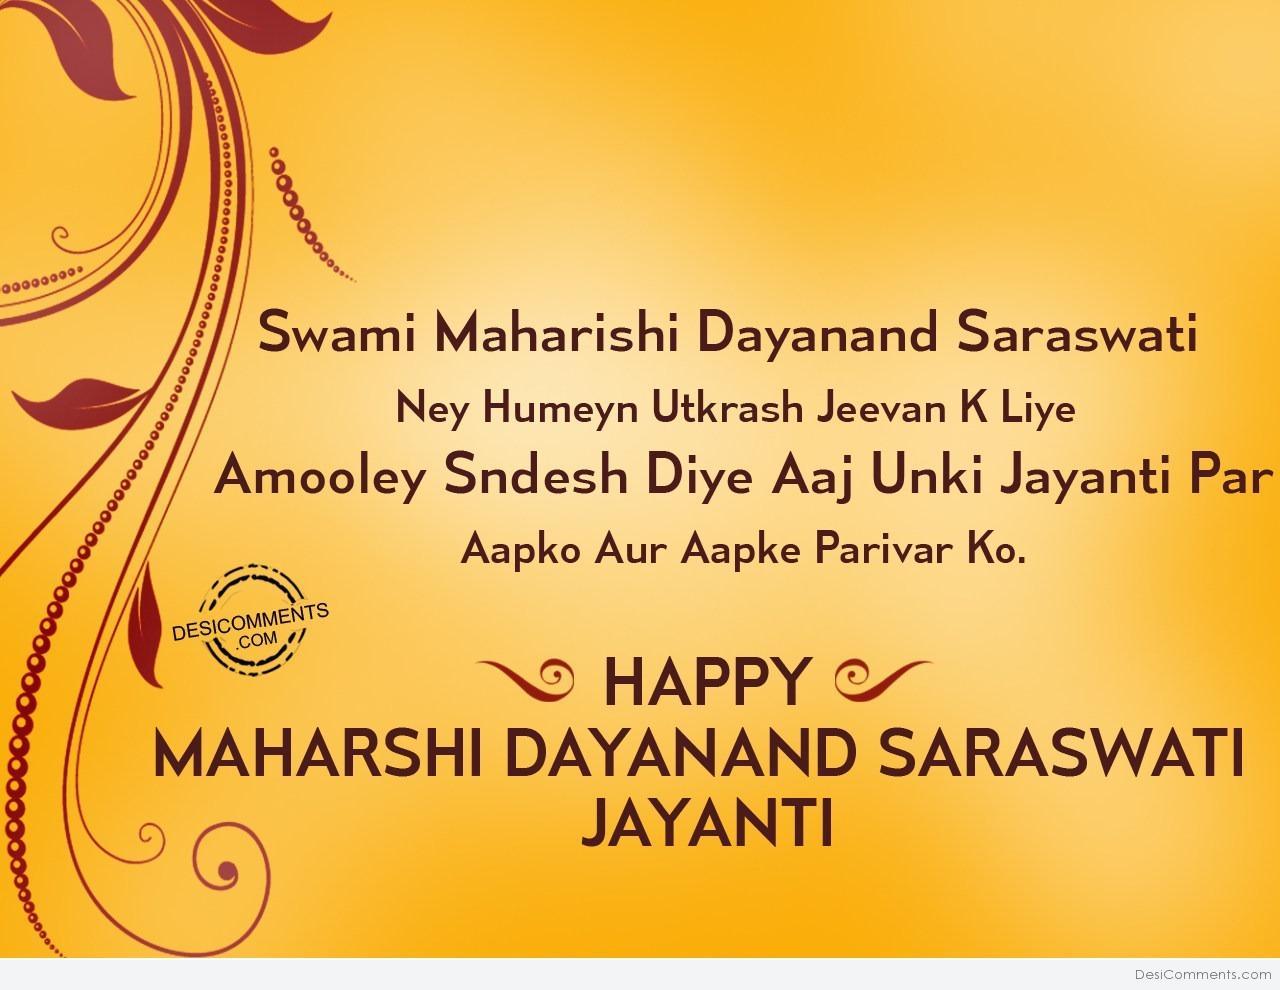 Happy Maharshi Dayanand Saraswati Jayanti